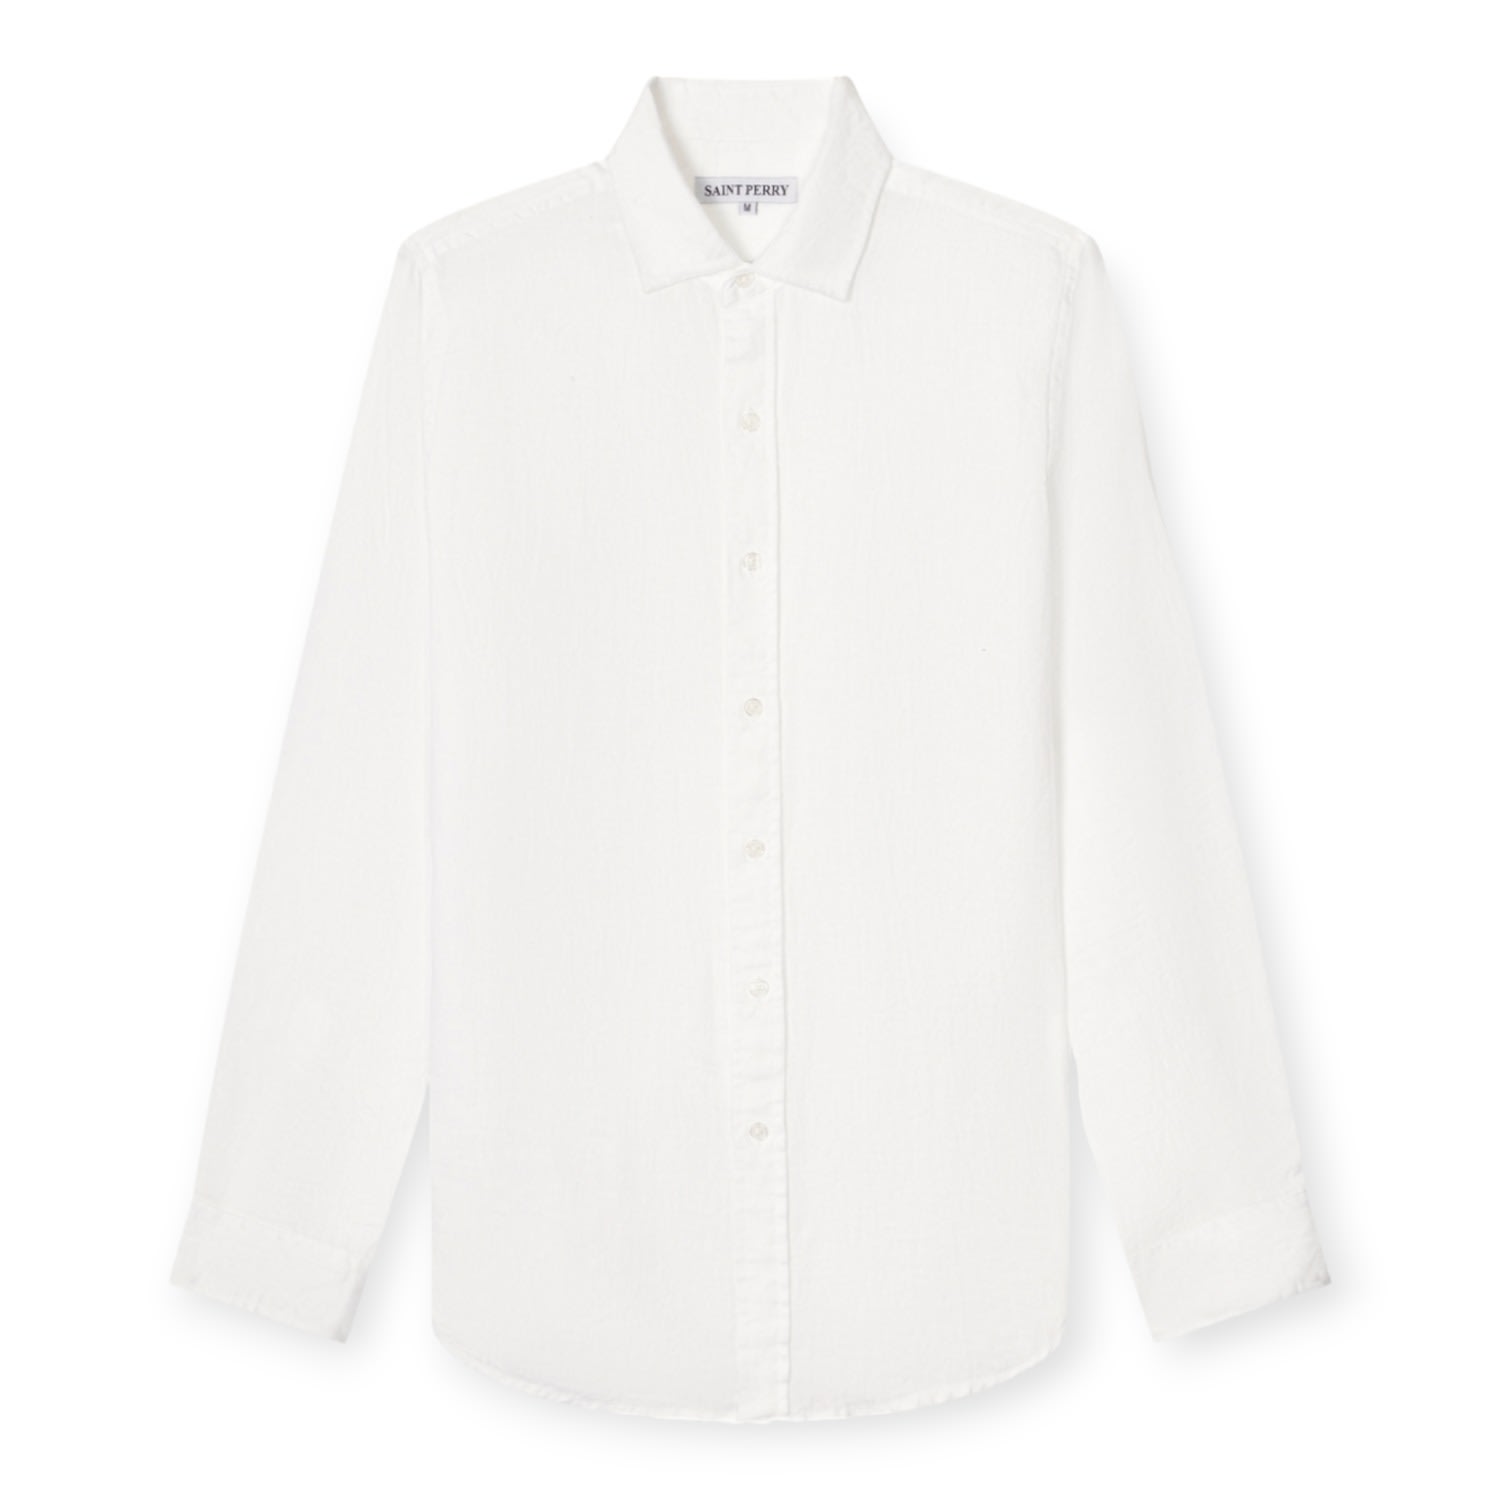 Men's Lightweight Linen Shirt - White Small SAINT PERRY